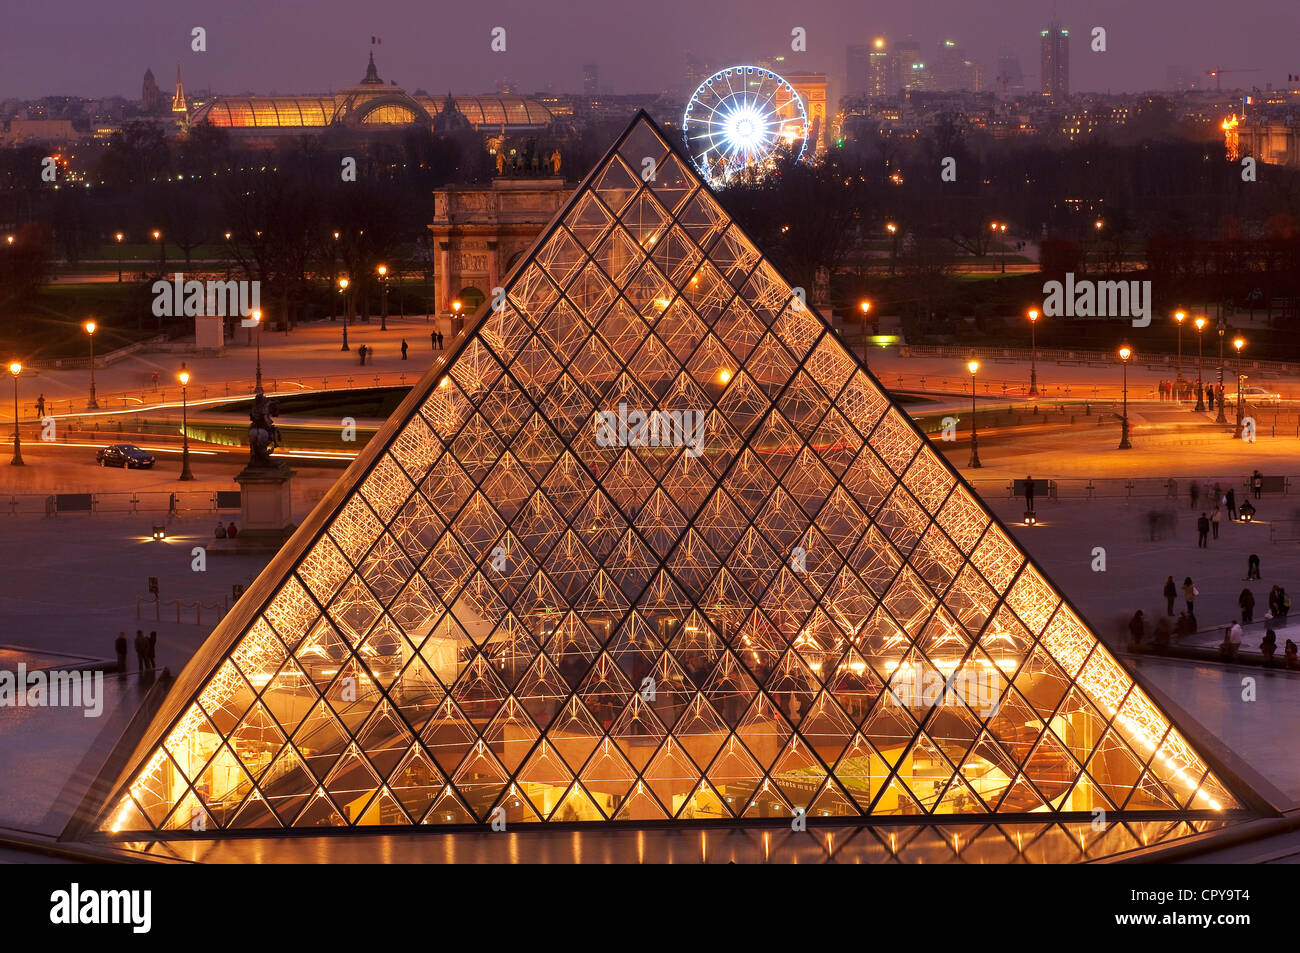 Frankreich, Paris, die Pyramide des Louvre von dem Architekten Ieoh Ming Pei Stockfoto